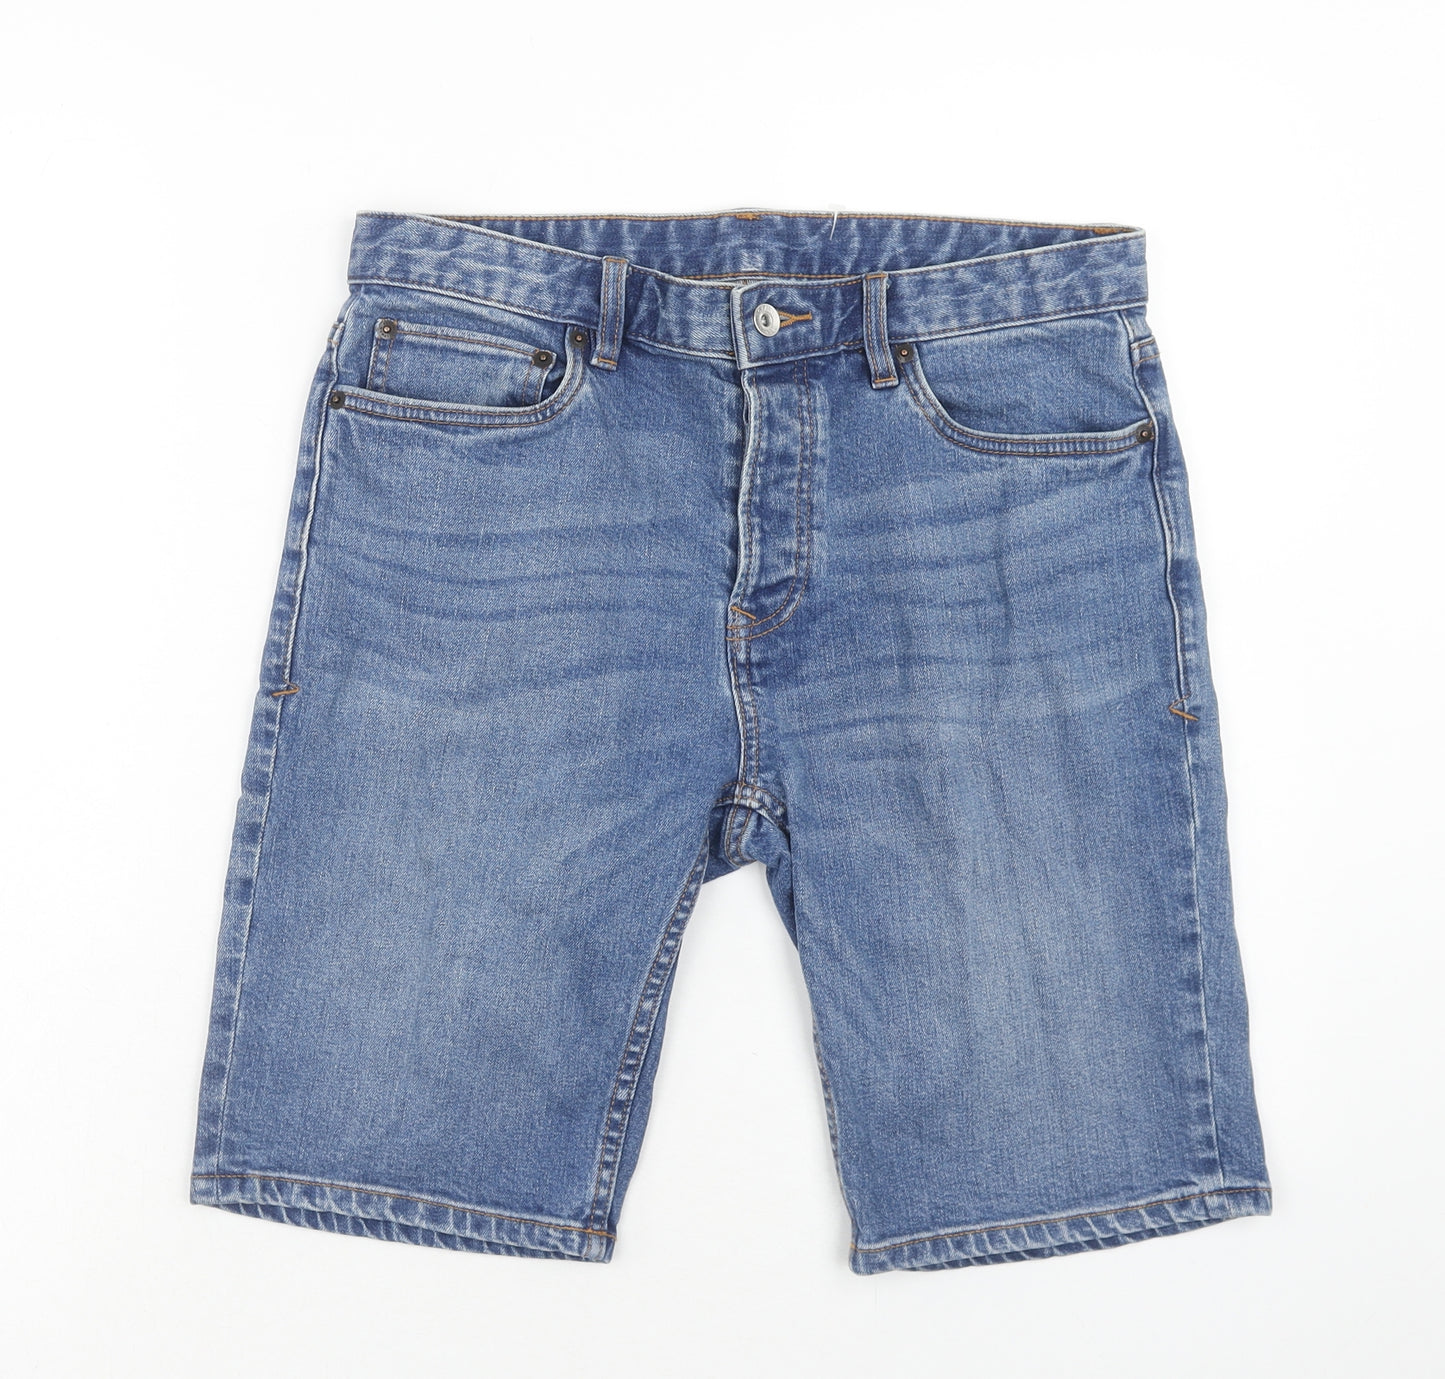 Topman Mens Blue Cotton Biker Shorts Size 32 in Regular Zip